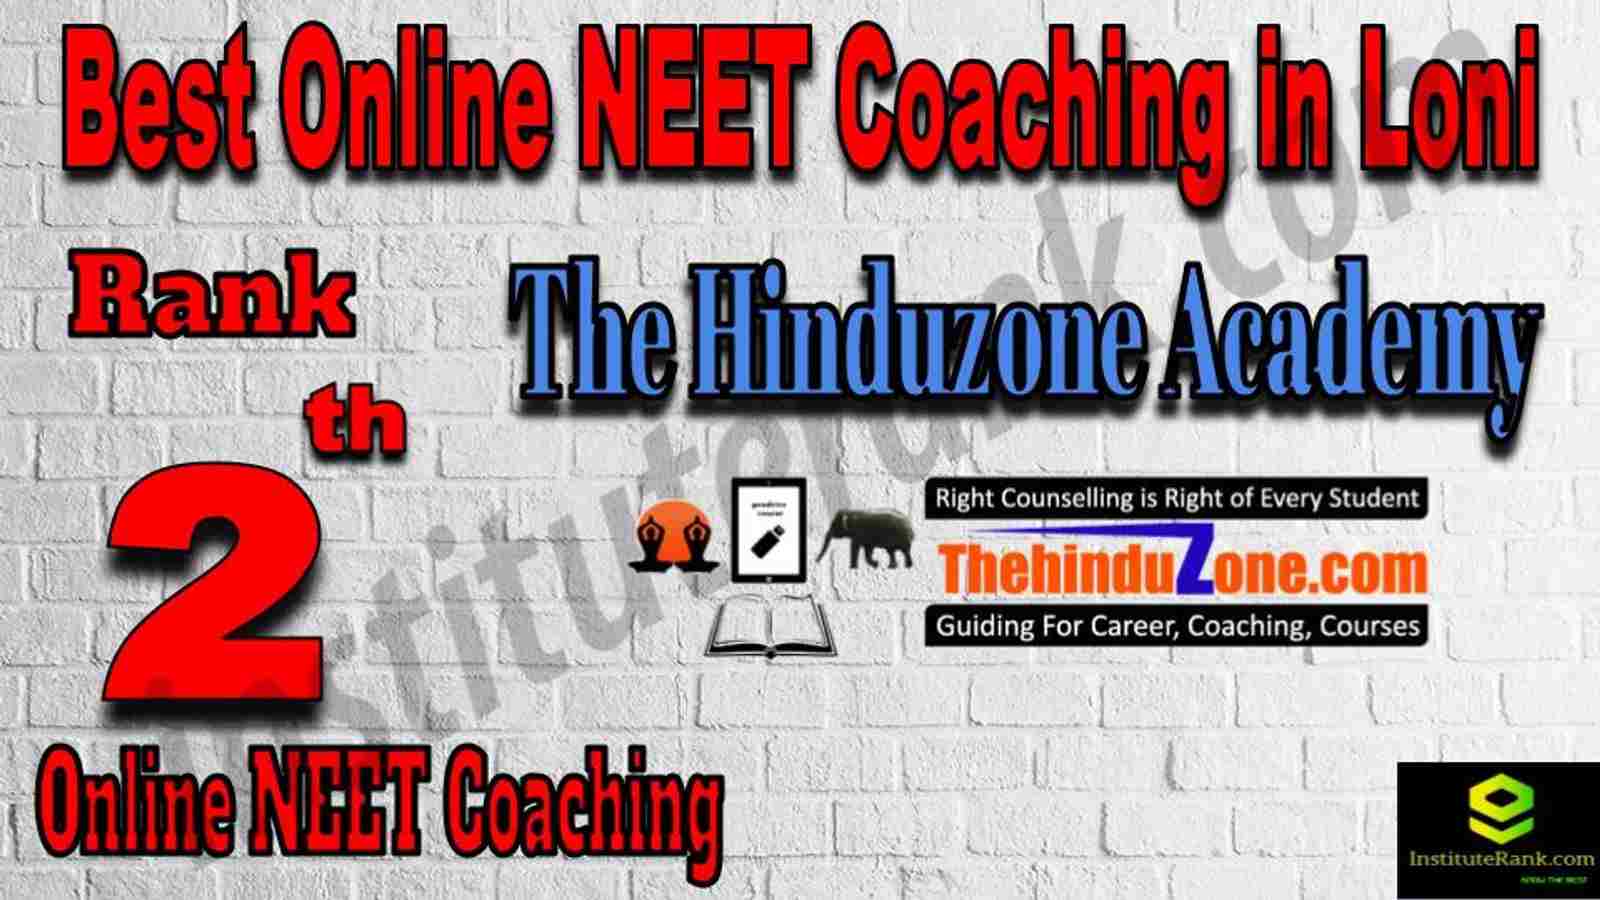 Rank 2 Best Online NEET Coaching in Loni